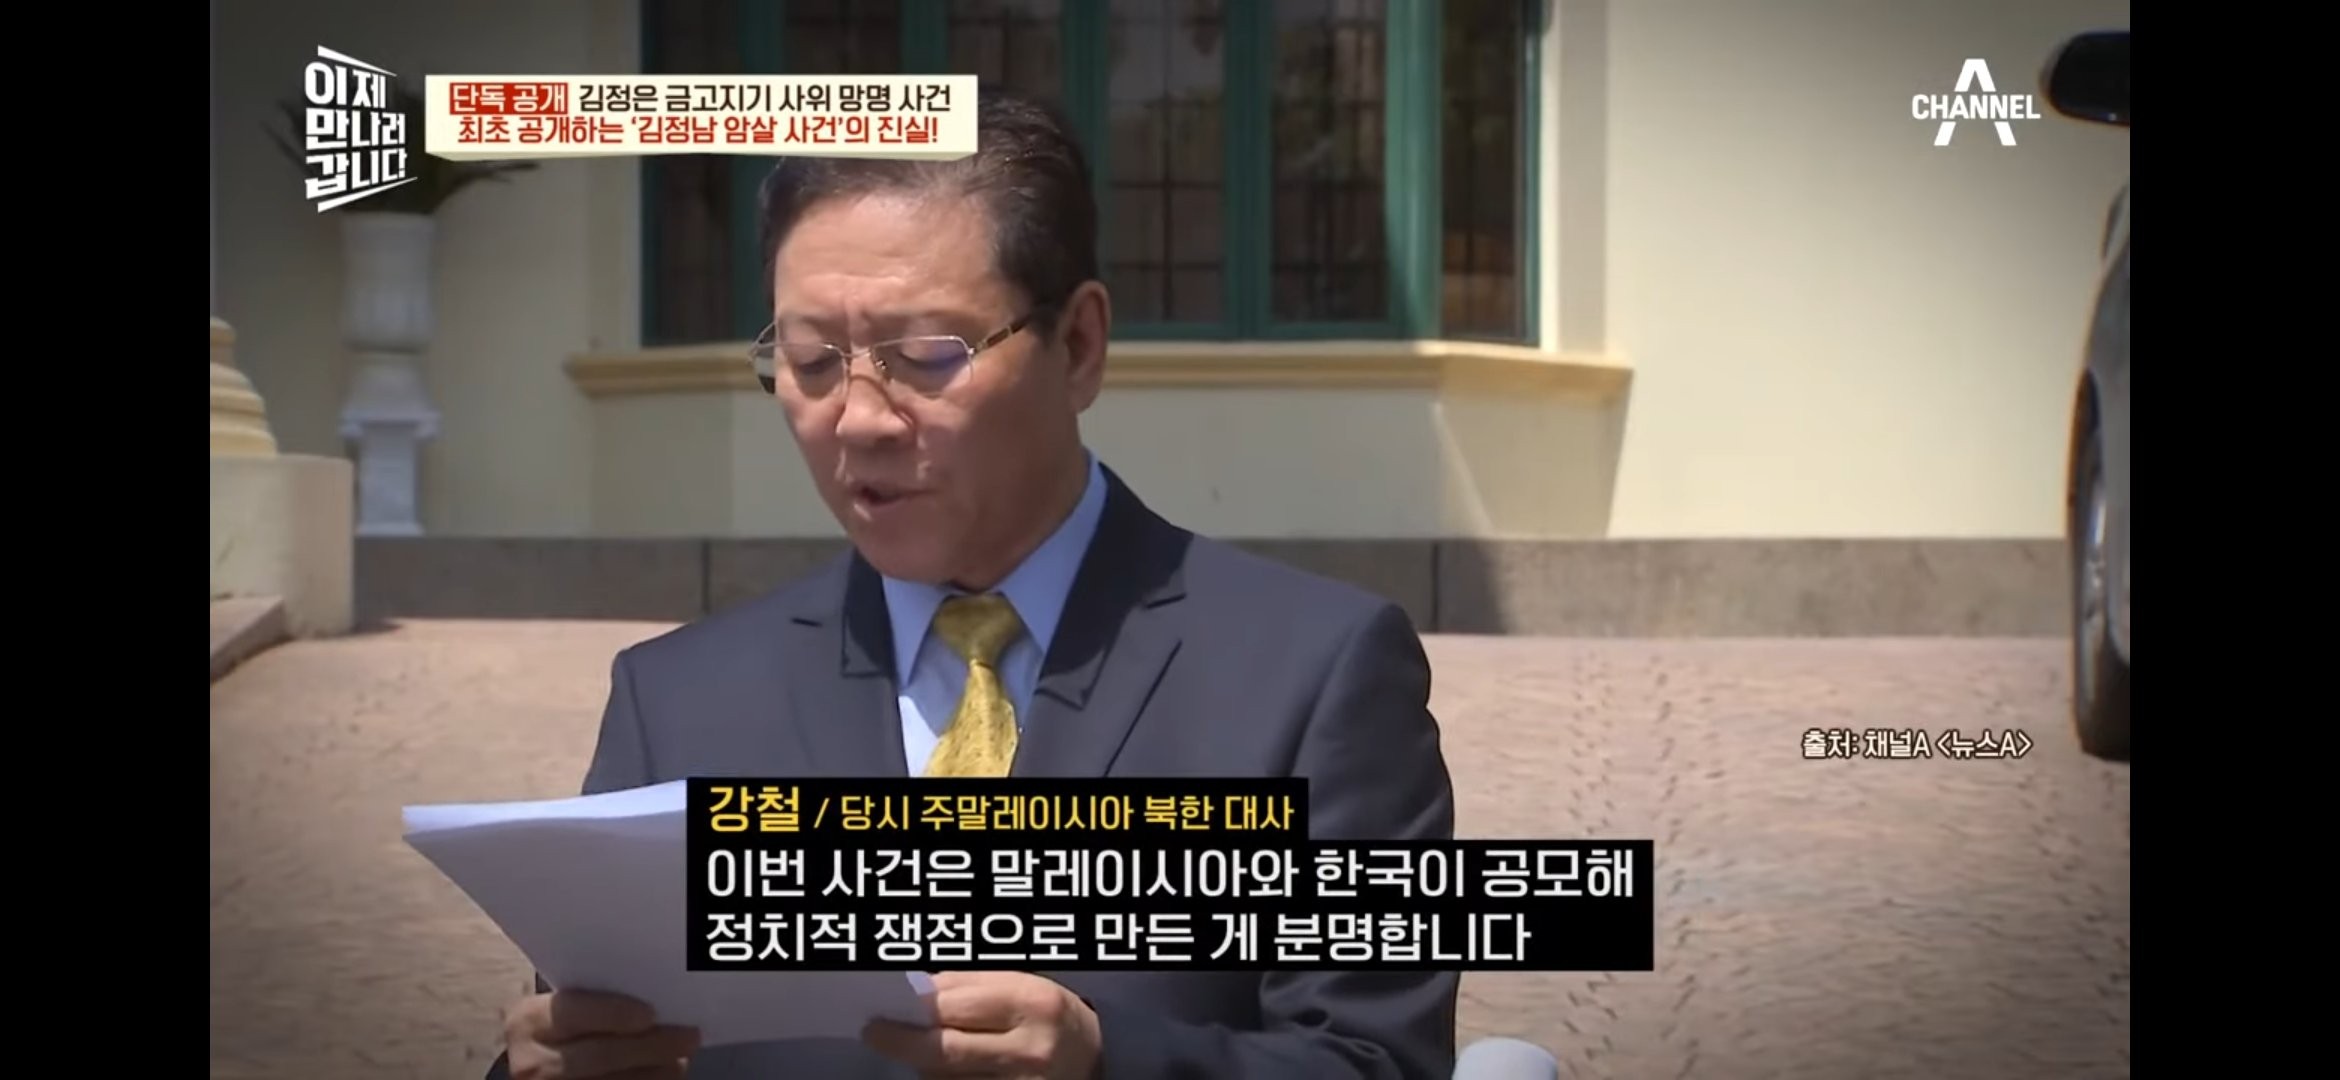 진짜로 아무것도 몰랐던 김정남 암살사건 당시 북한 공무원